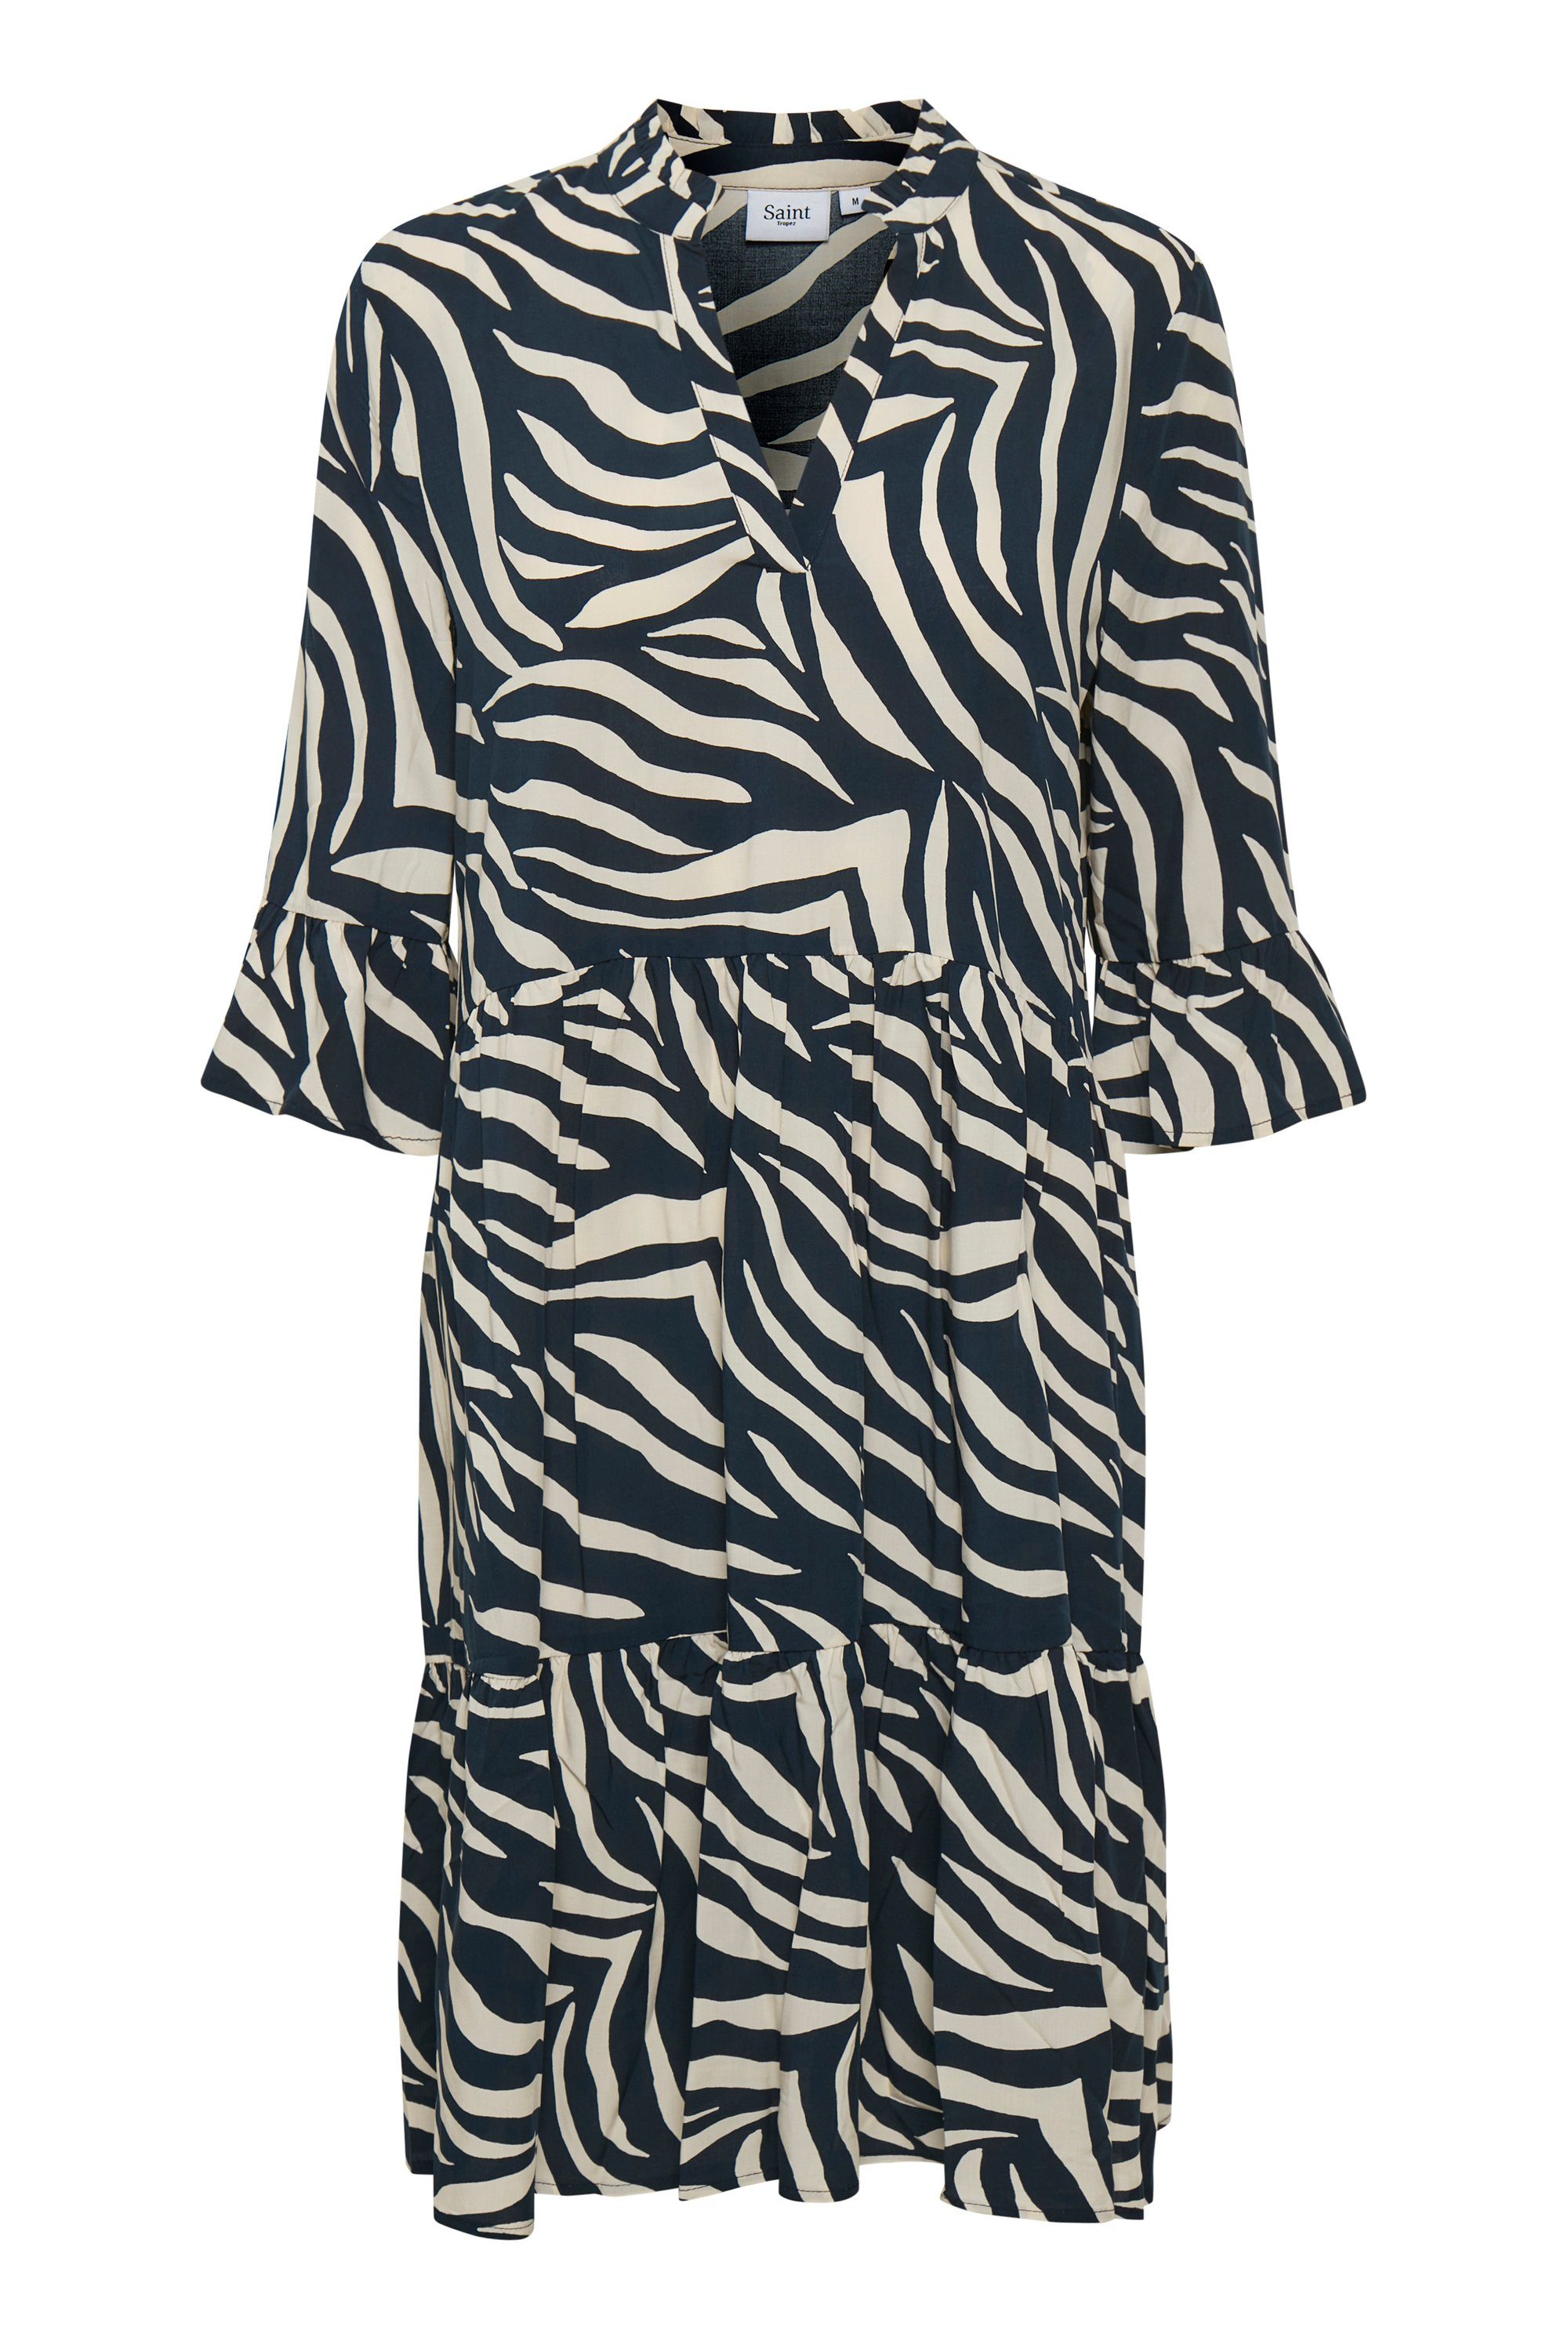 Zebra Eclipse Dress Skin Jerseykleid EdaSZ Tropez Total Saint